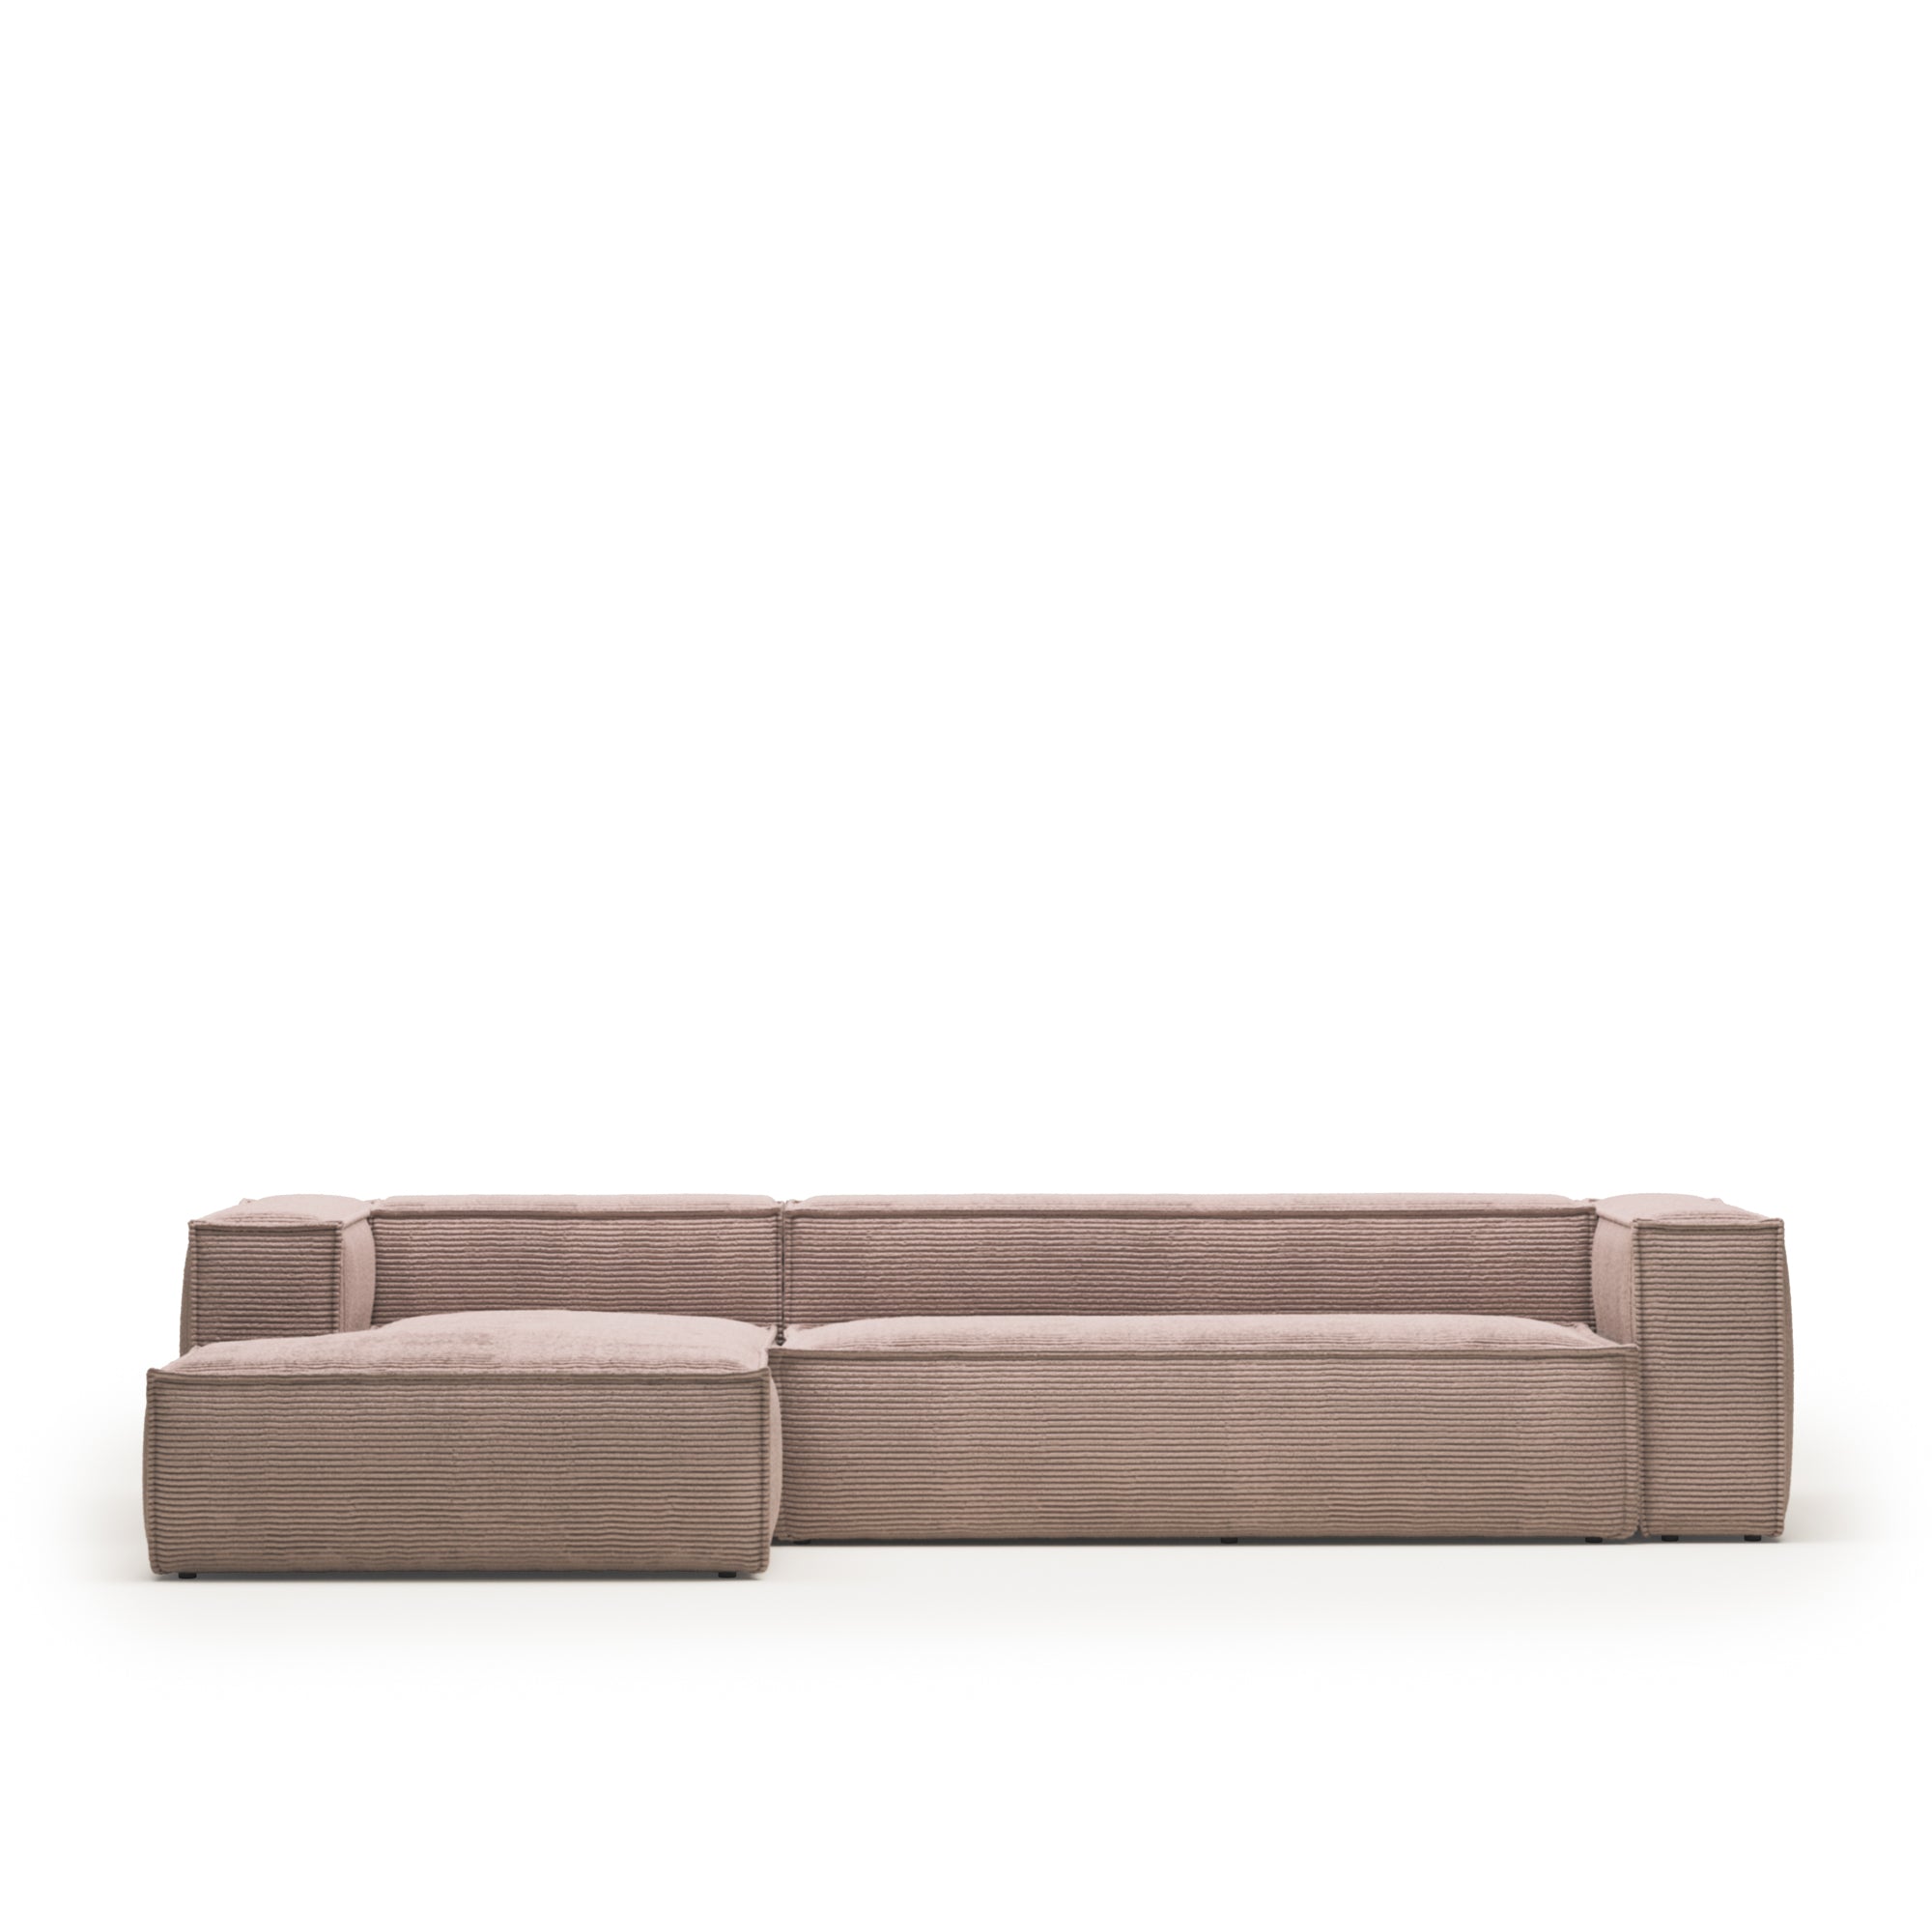 Blok 4 személyes kanapé bal oldali fekvőfotellel, rózsaszín, széles varrású kordbársony, 330 cm